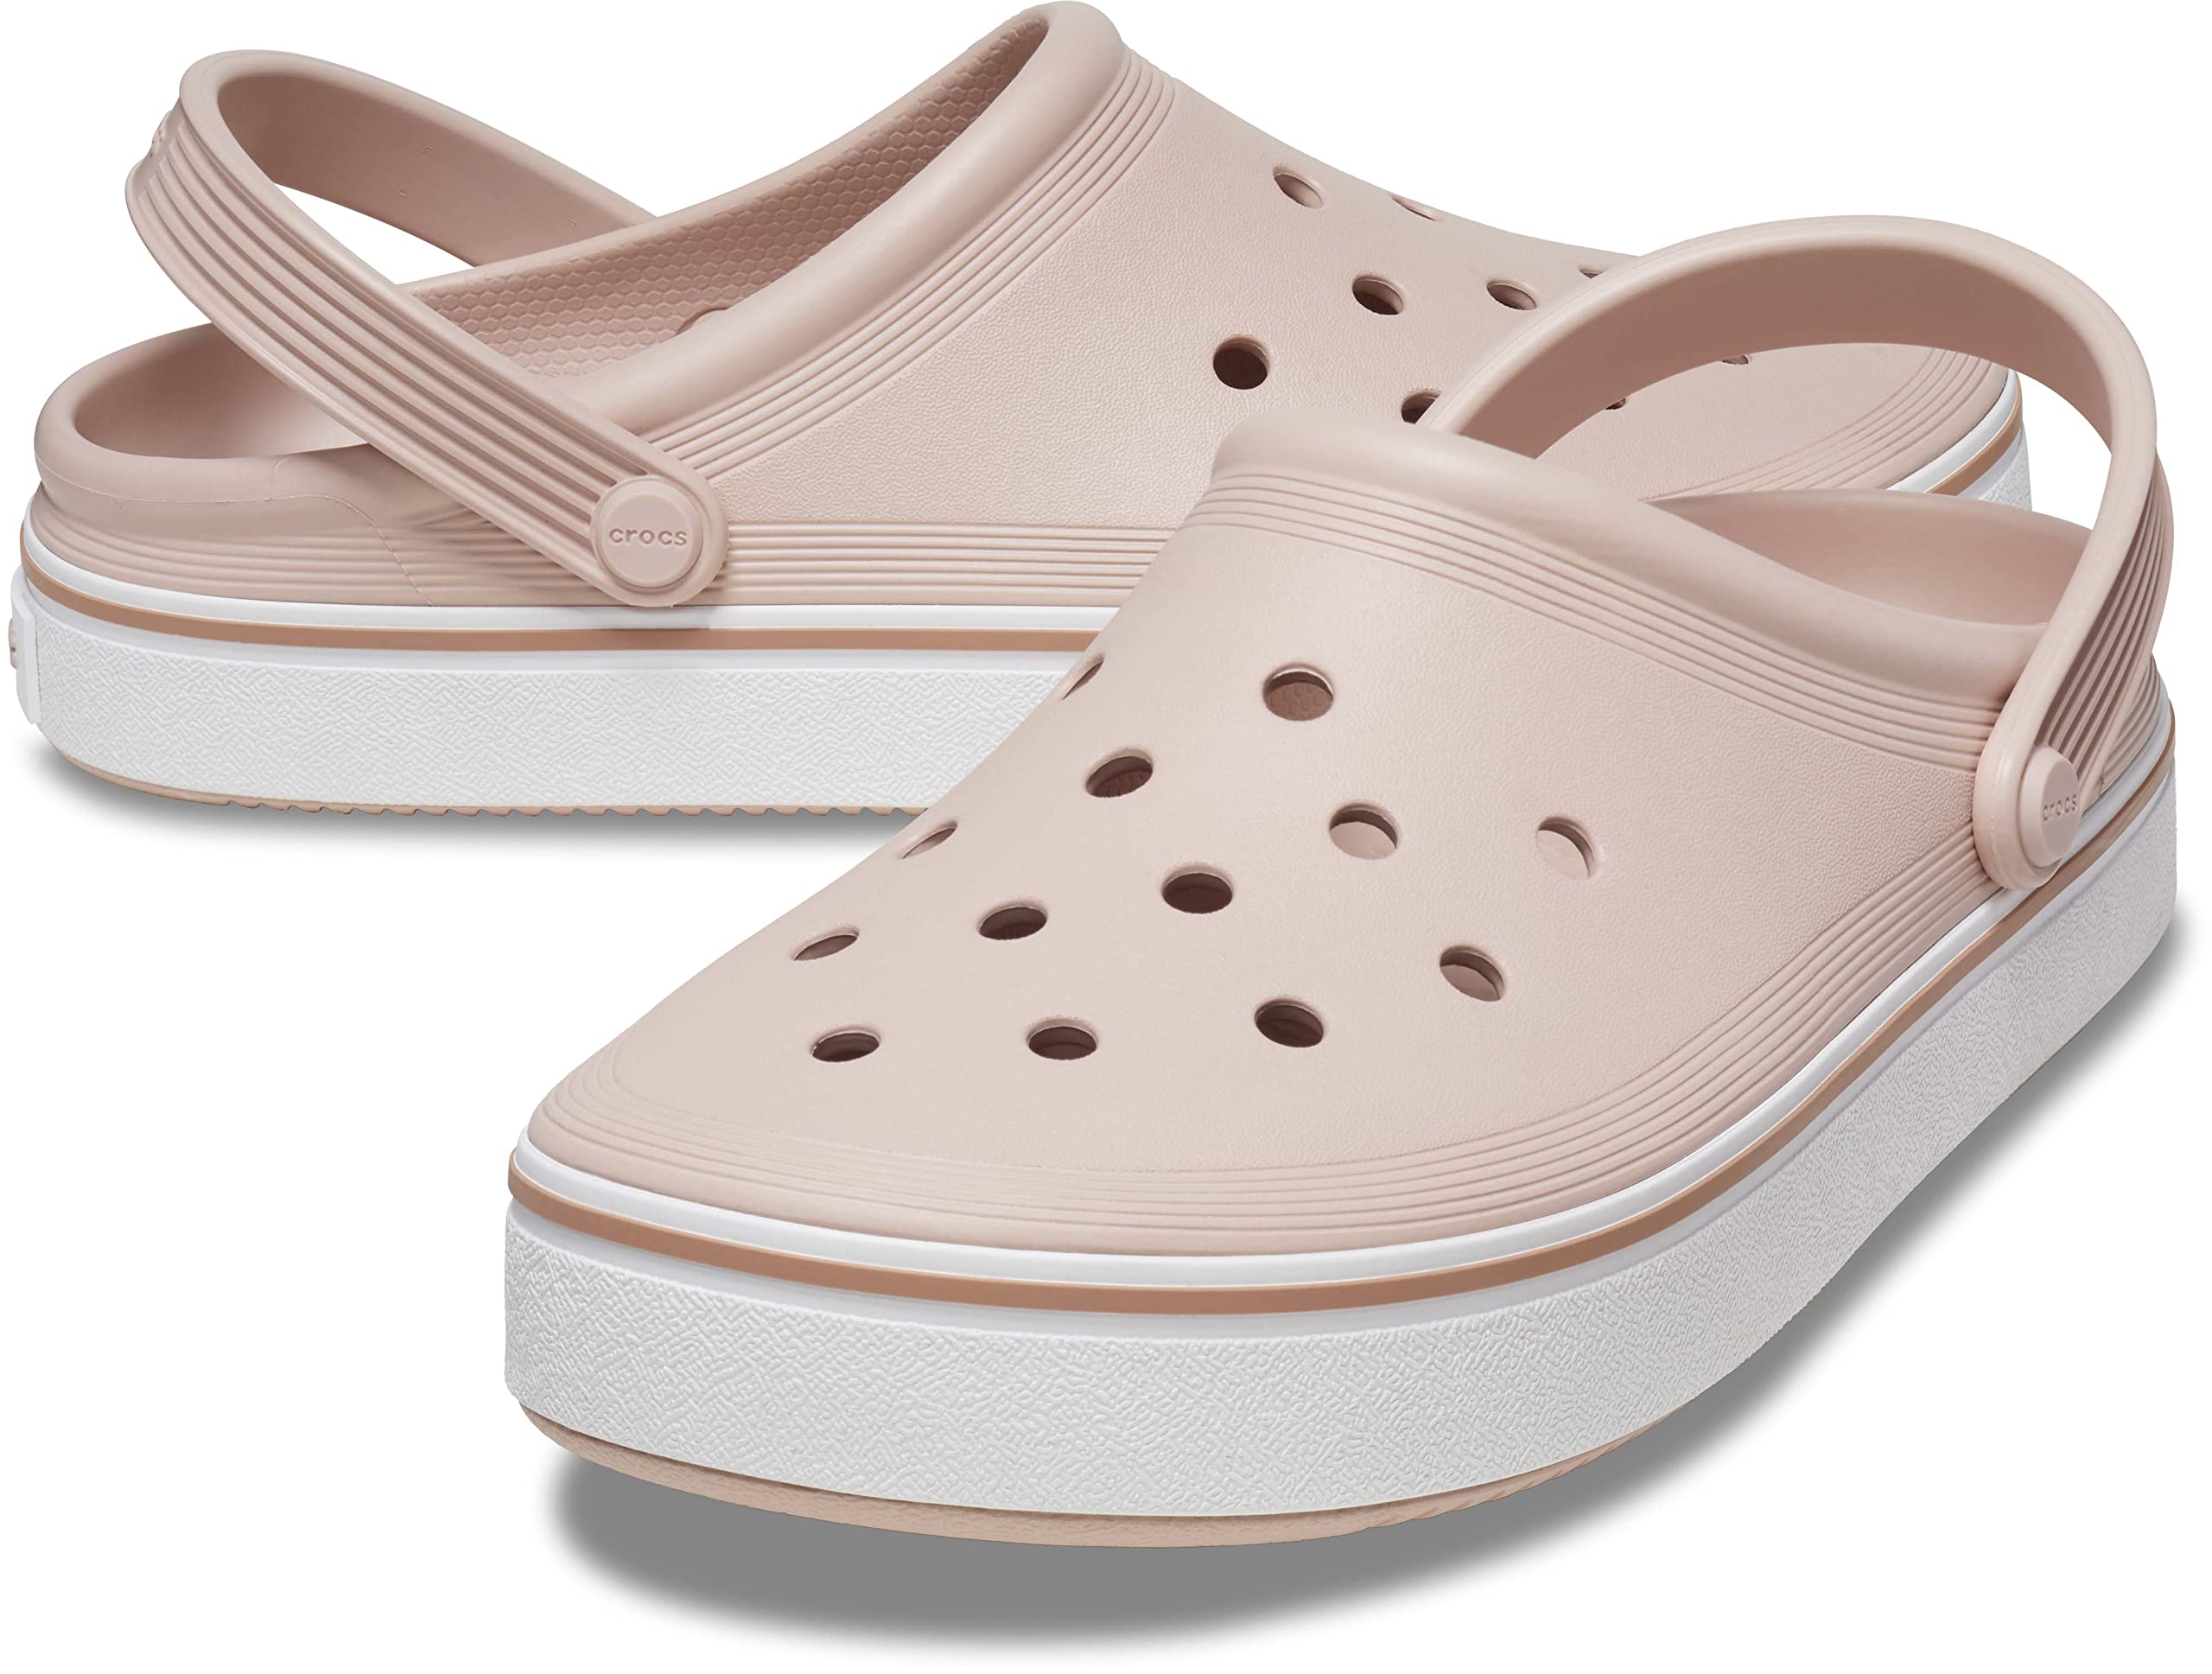 Crocs unisex-adult Off Court Clogs, Slip on Shoes